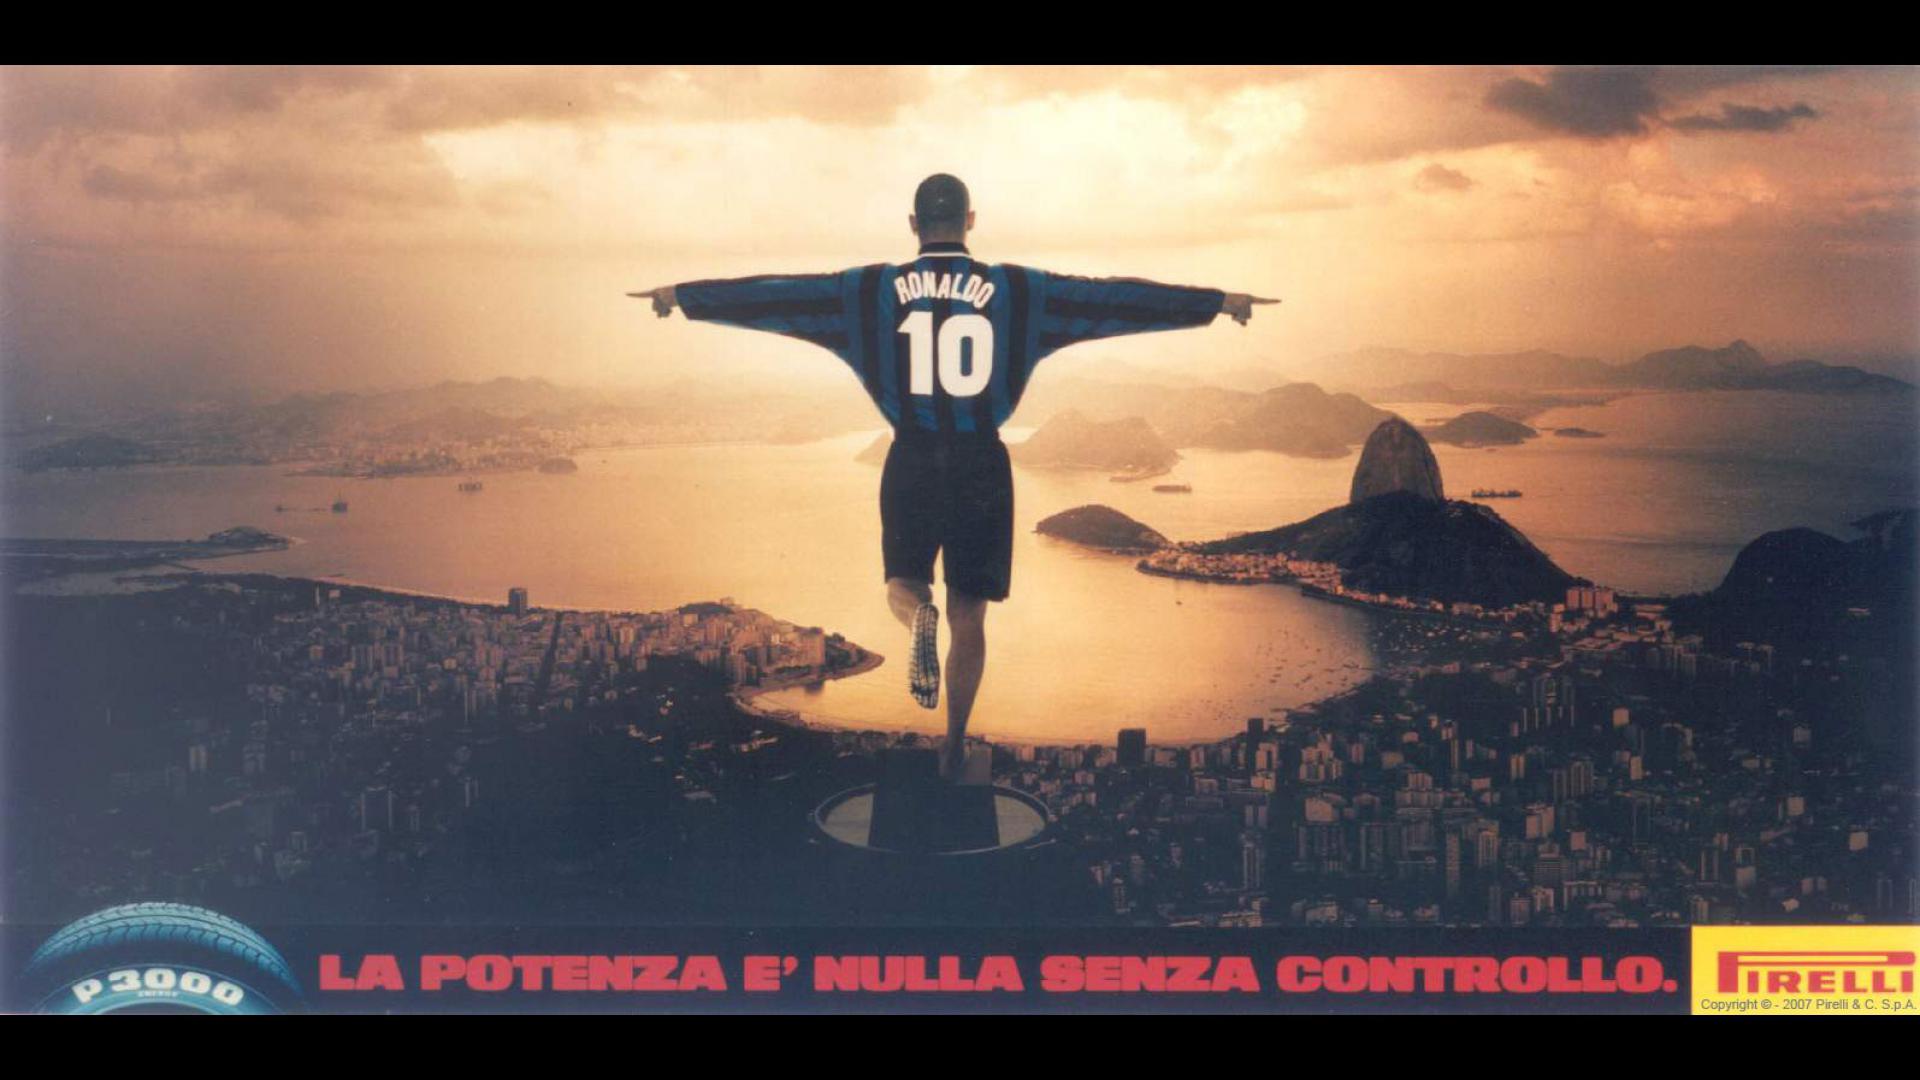 La campagna Pirelli dedicata a Ronaldo